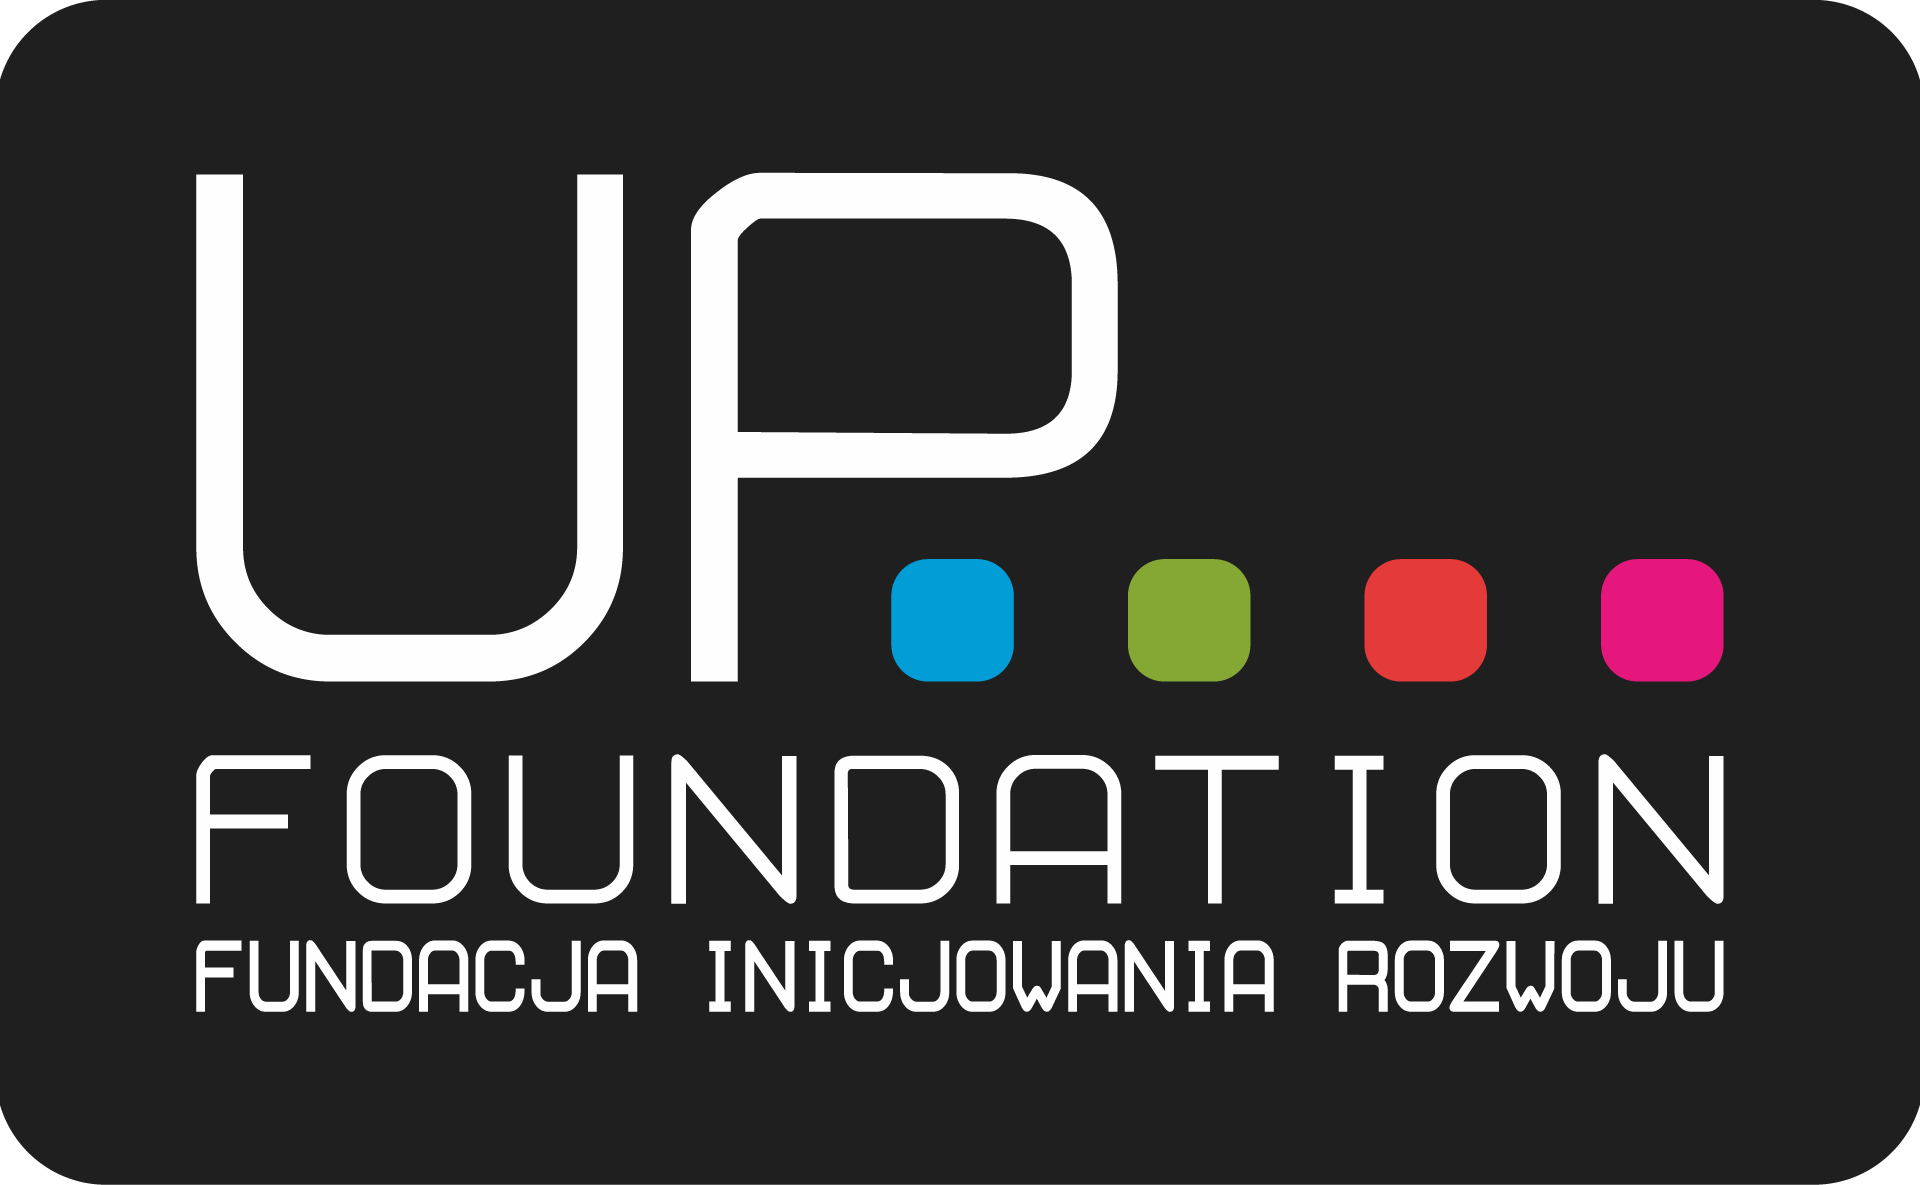 UP Foundation logo